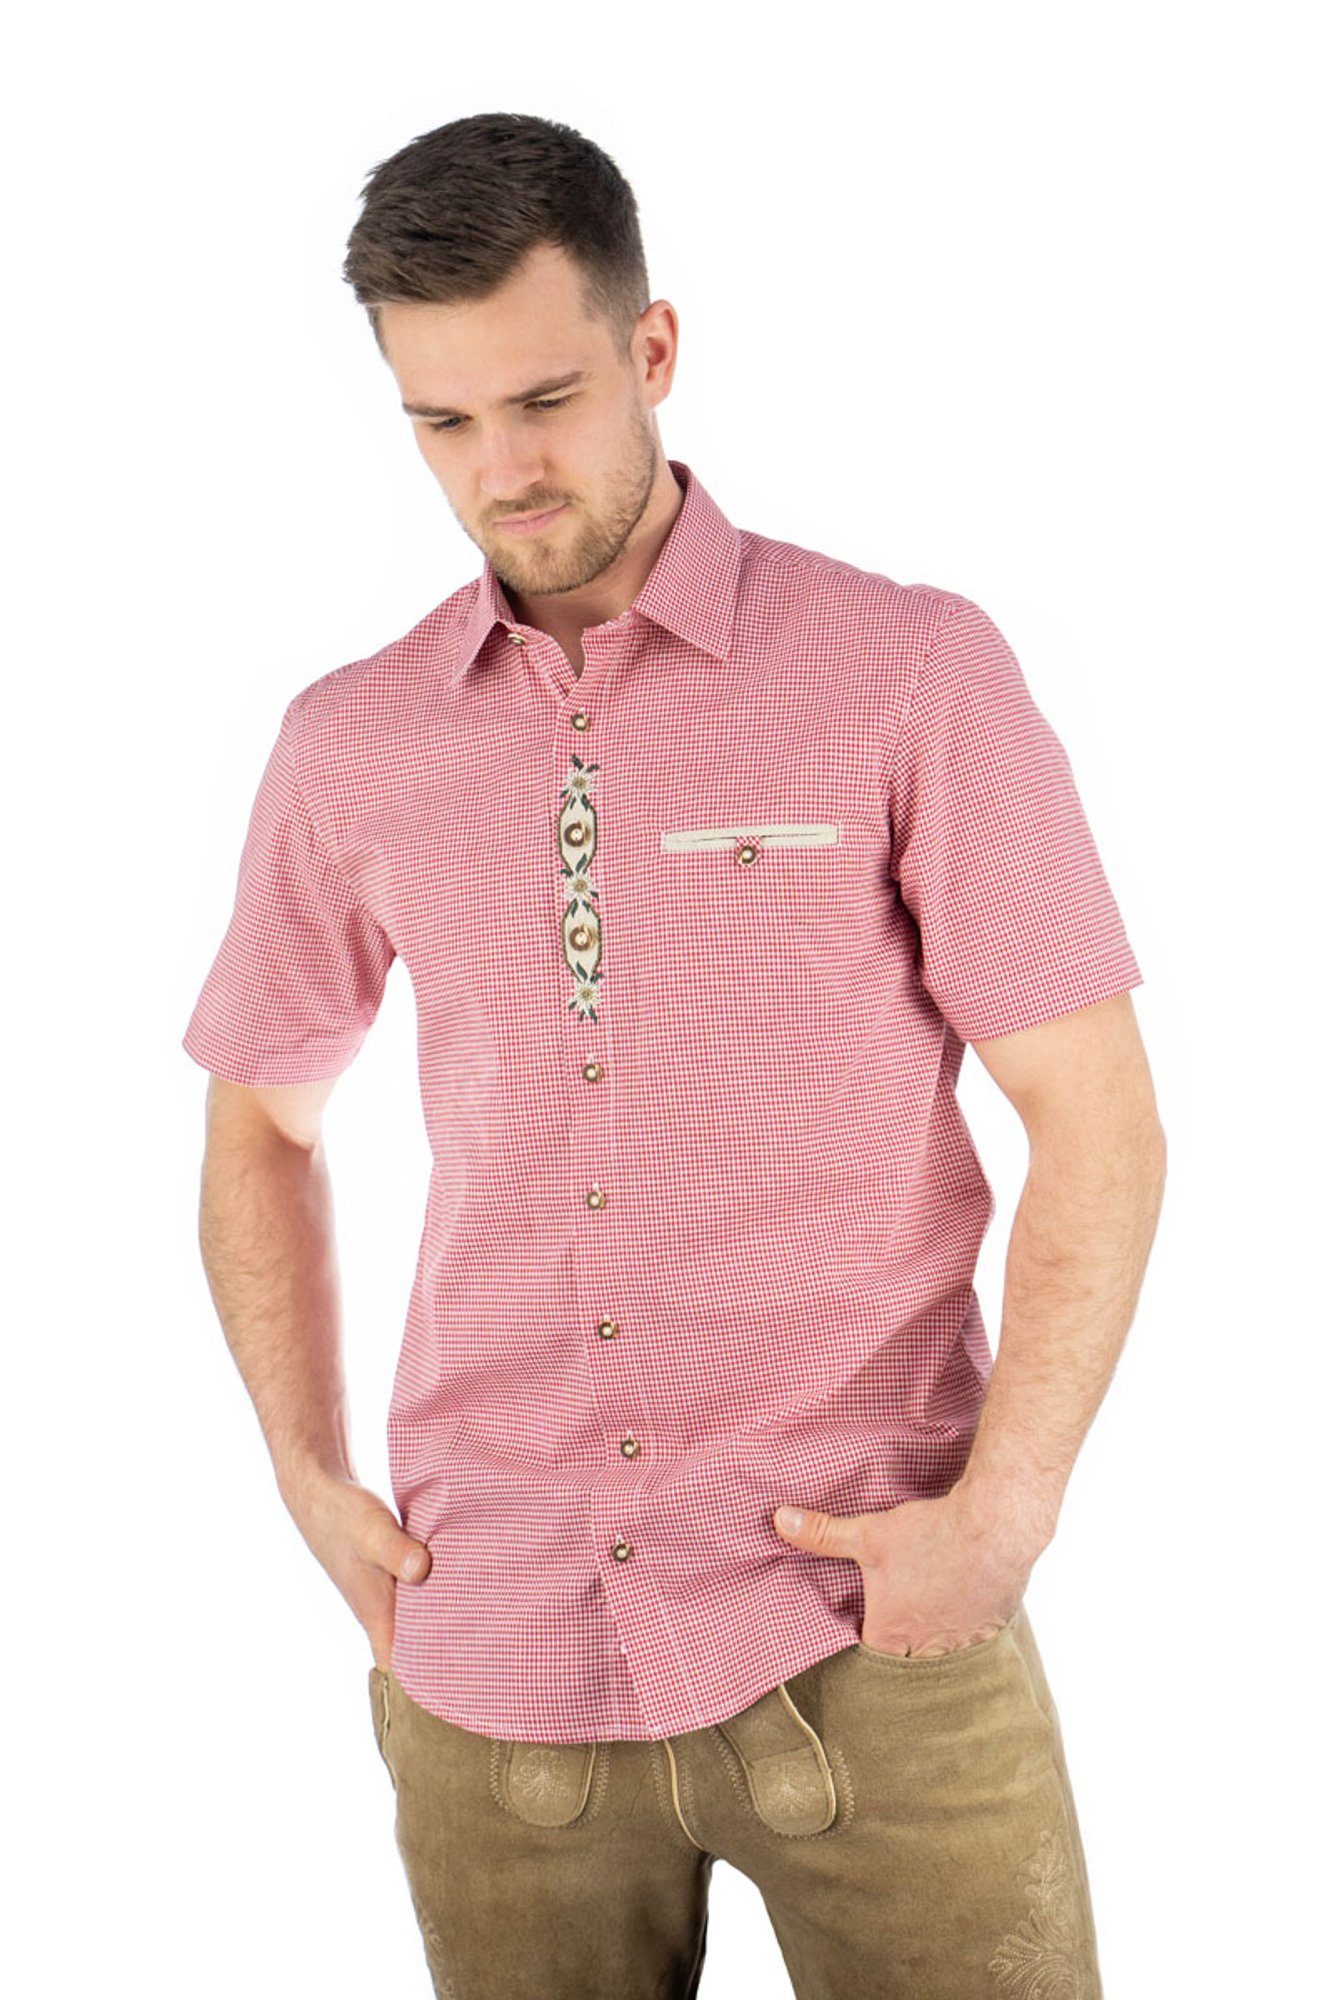 OS-Trachten Trachtenhemd Weonys Kurzarmhemd mit Paspeltasche, Edelweiß-Stickerei auf der Knopfleiste hochrot | Trachtenhemden